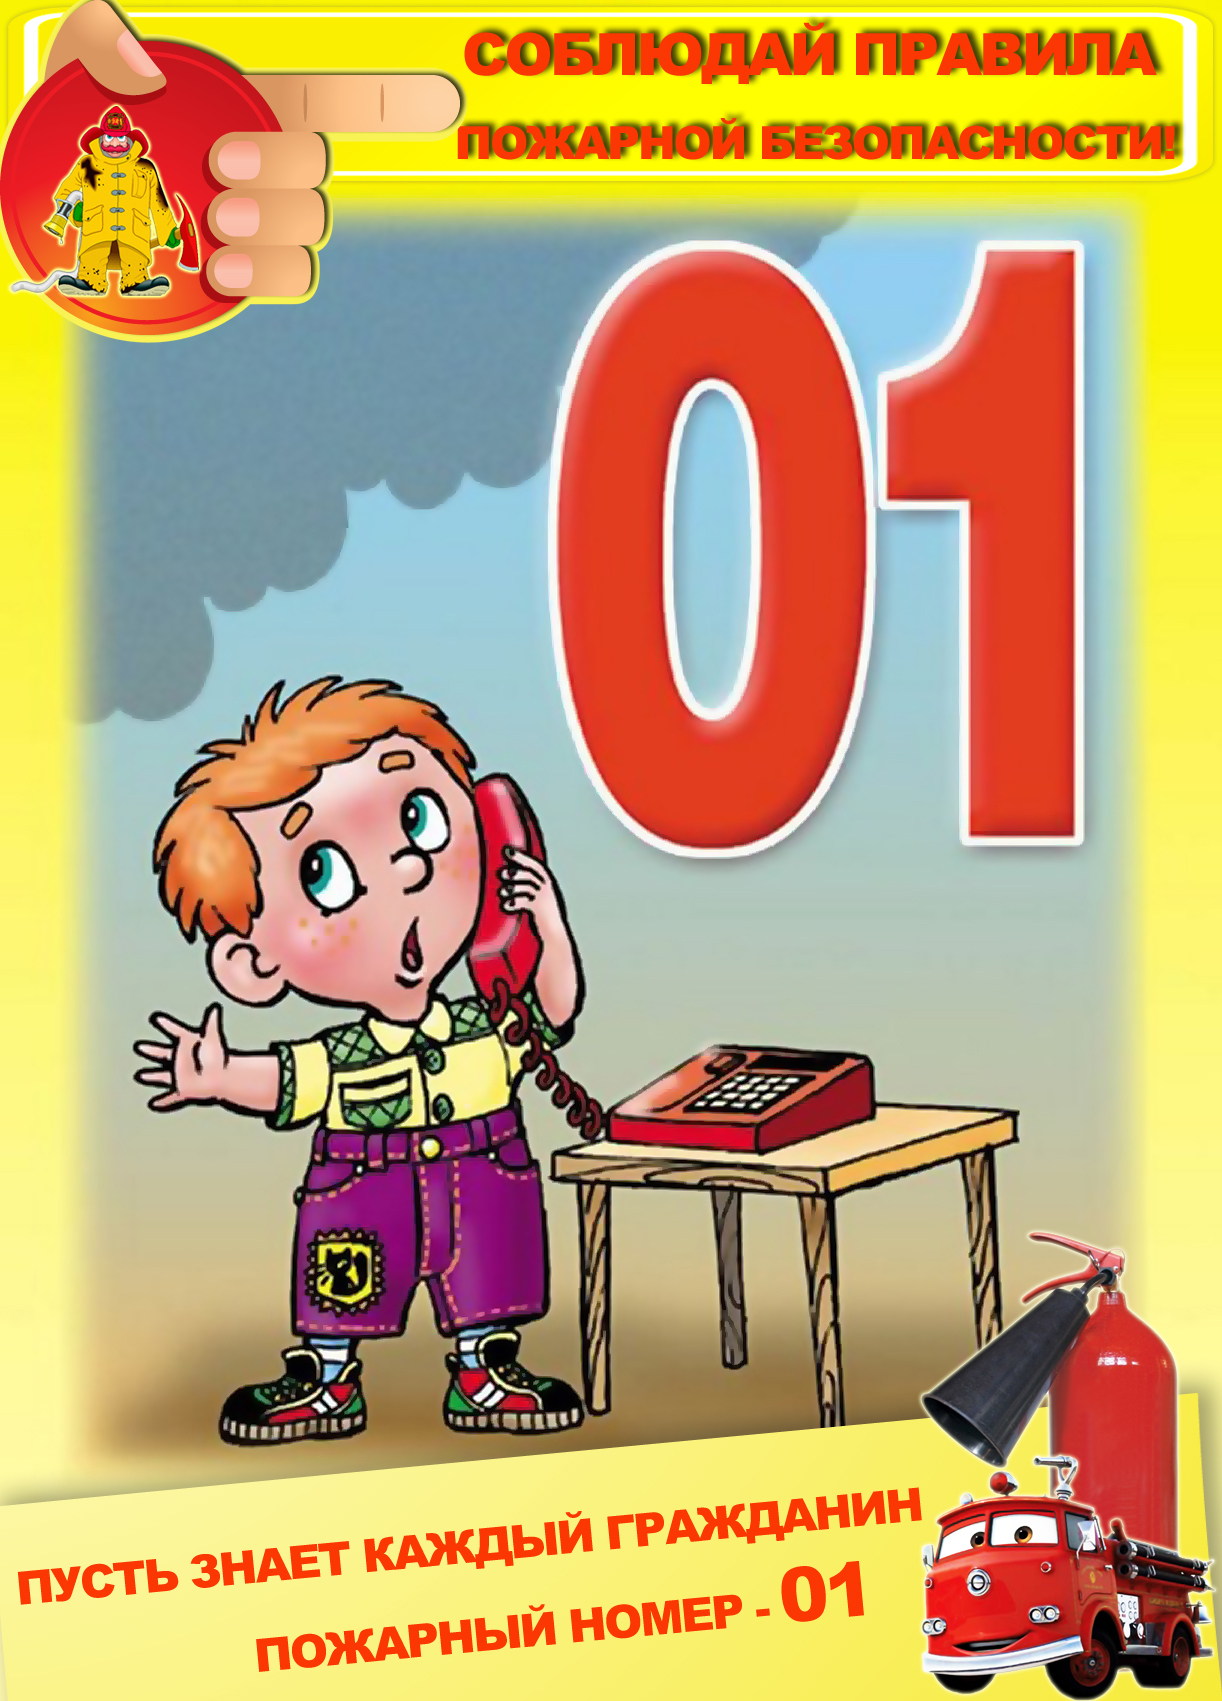 2446 1 о безопасности. Правила пожарной безопасности. Пожарная безопасность для детей. Правила пожарнойибезопасности. Правила пожарной безопасности для детей.